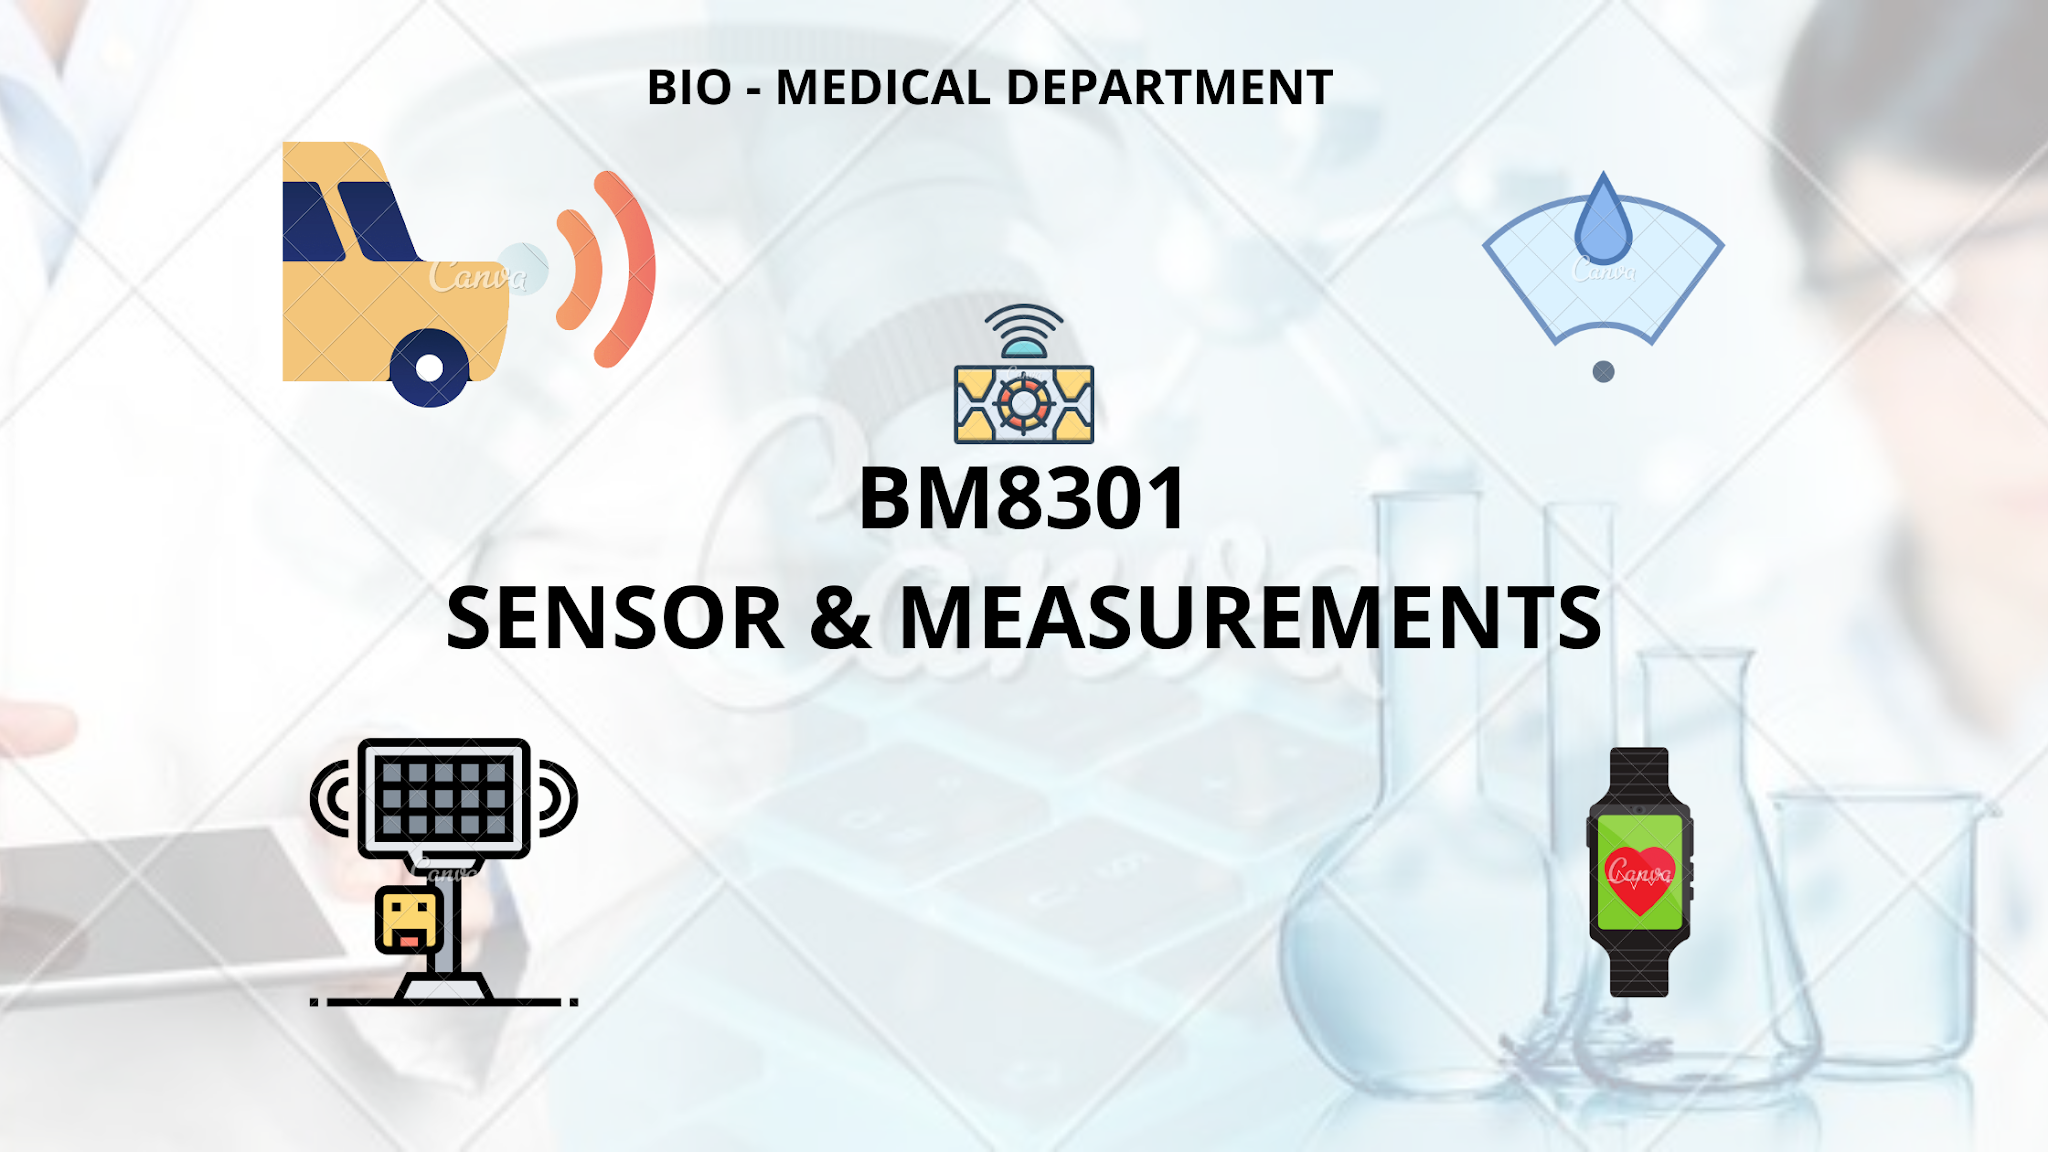 BM8301 - Sensor & Measurements